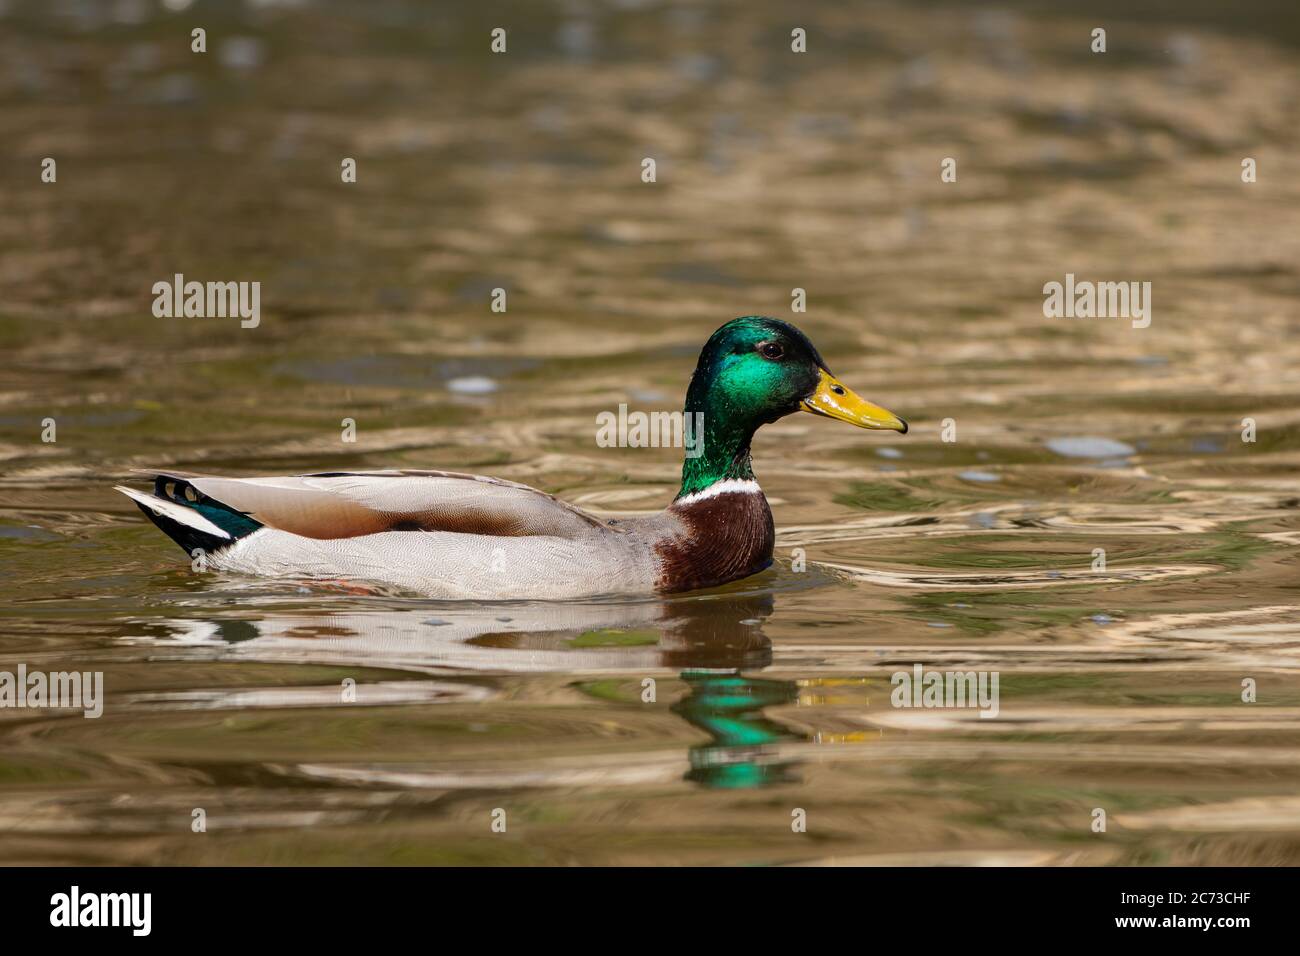 A male Mallard duck swimming in a small stream in st-eustache, quebec. Stock Photo